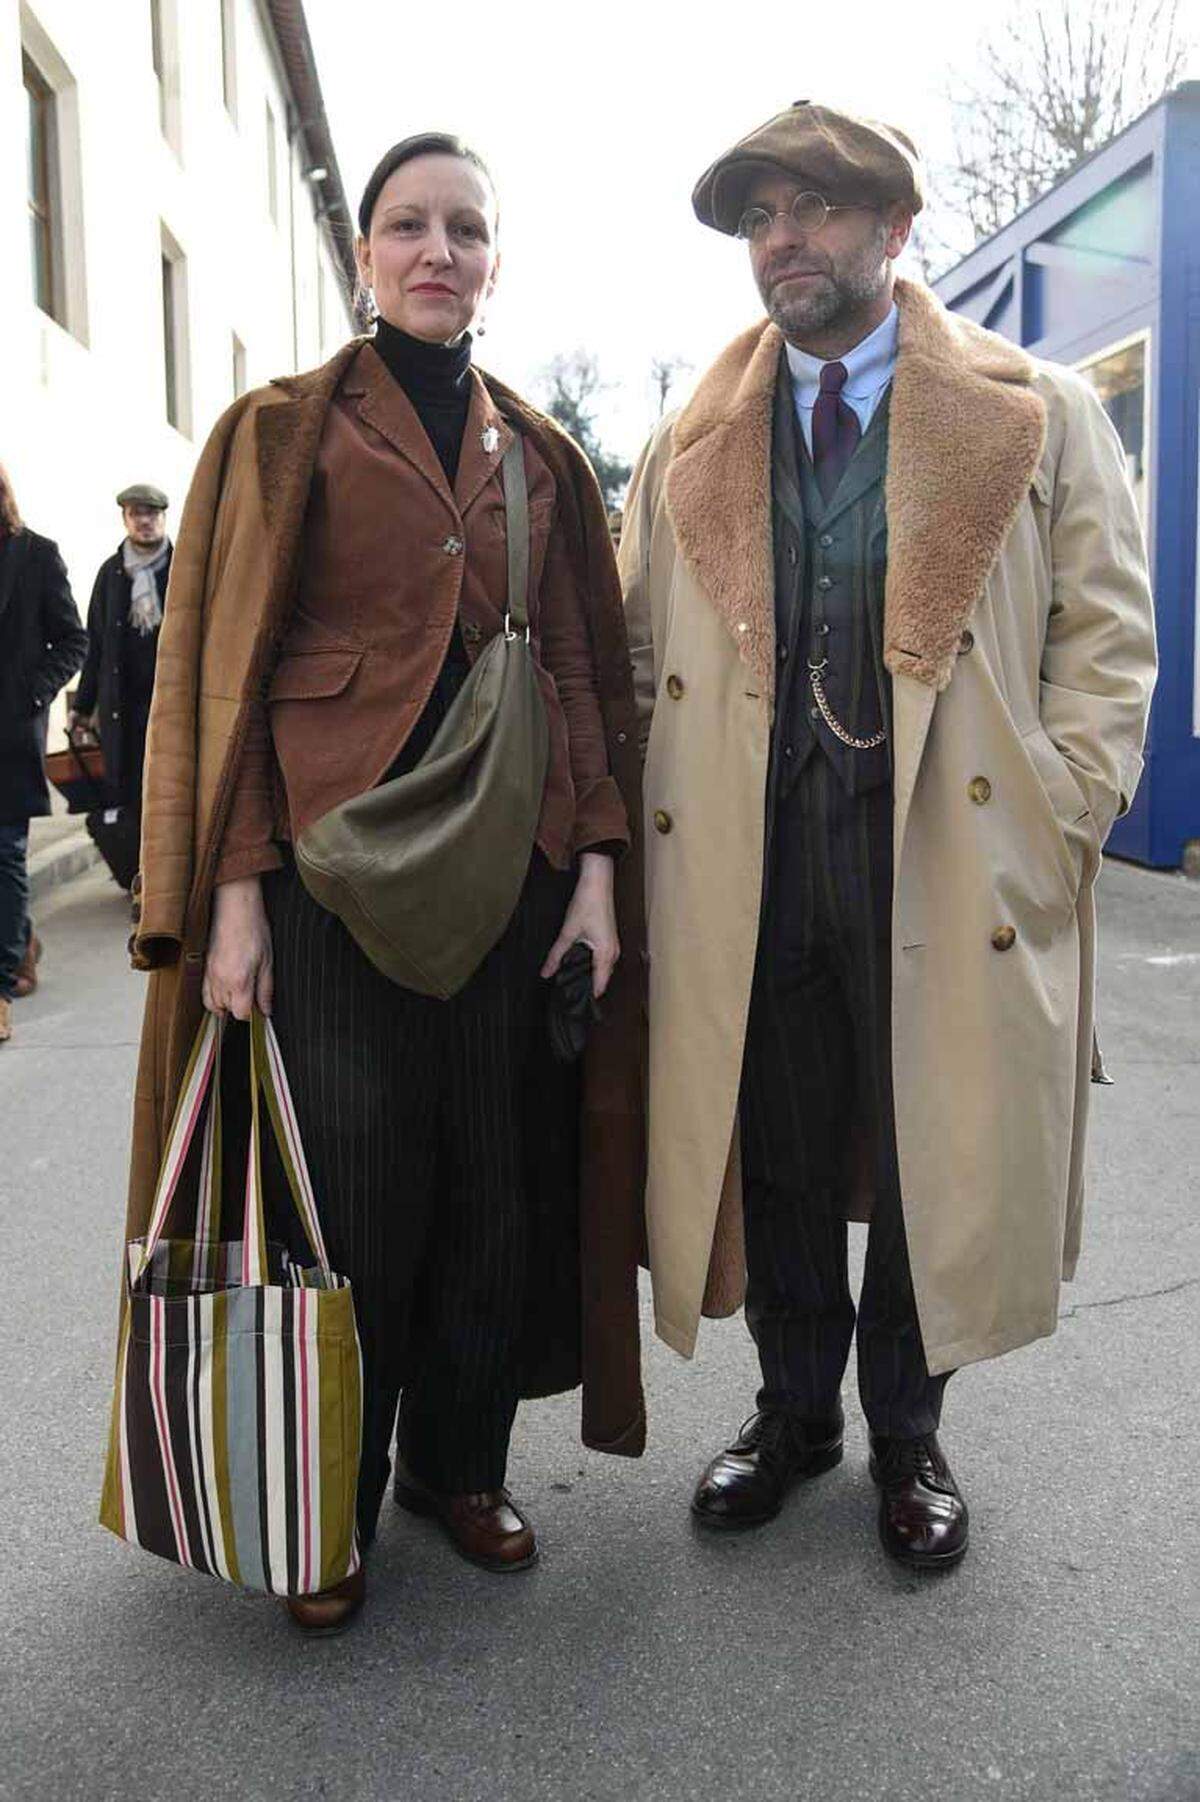 In Florenz begegnet man gerade einem Übermaß an gut gekleideten Herren. Das kommt nicht von ungefähr: Die Pitti Immagine Uomo findet gerade statt und zeigt nach London die neuesten Herrentrends aus Italien.    